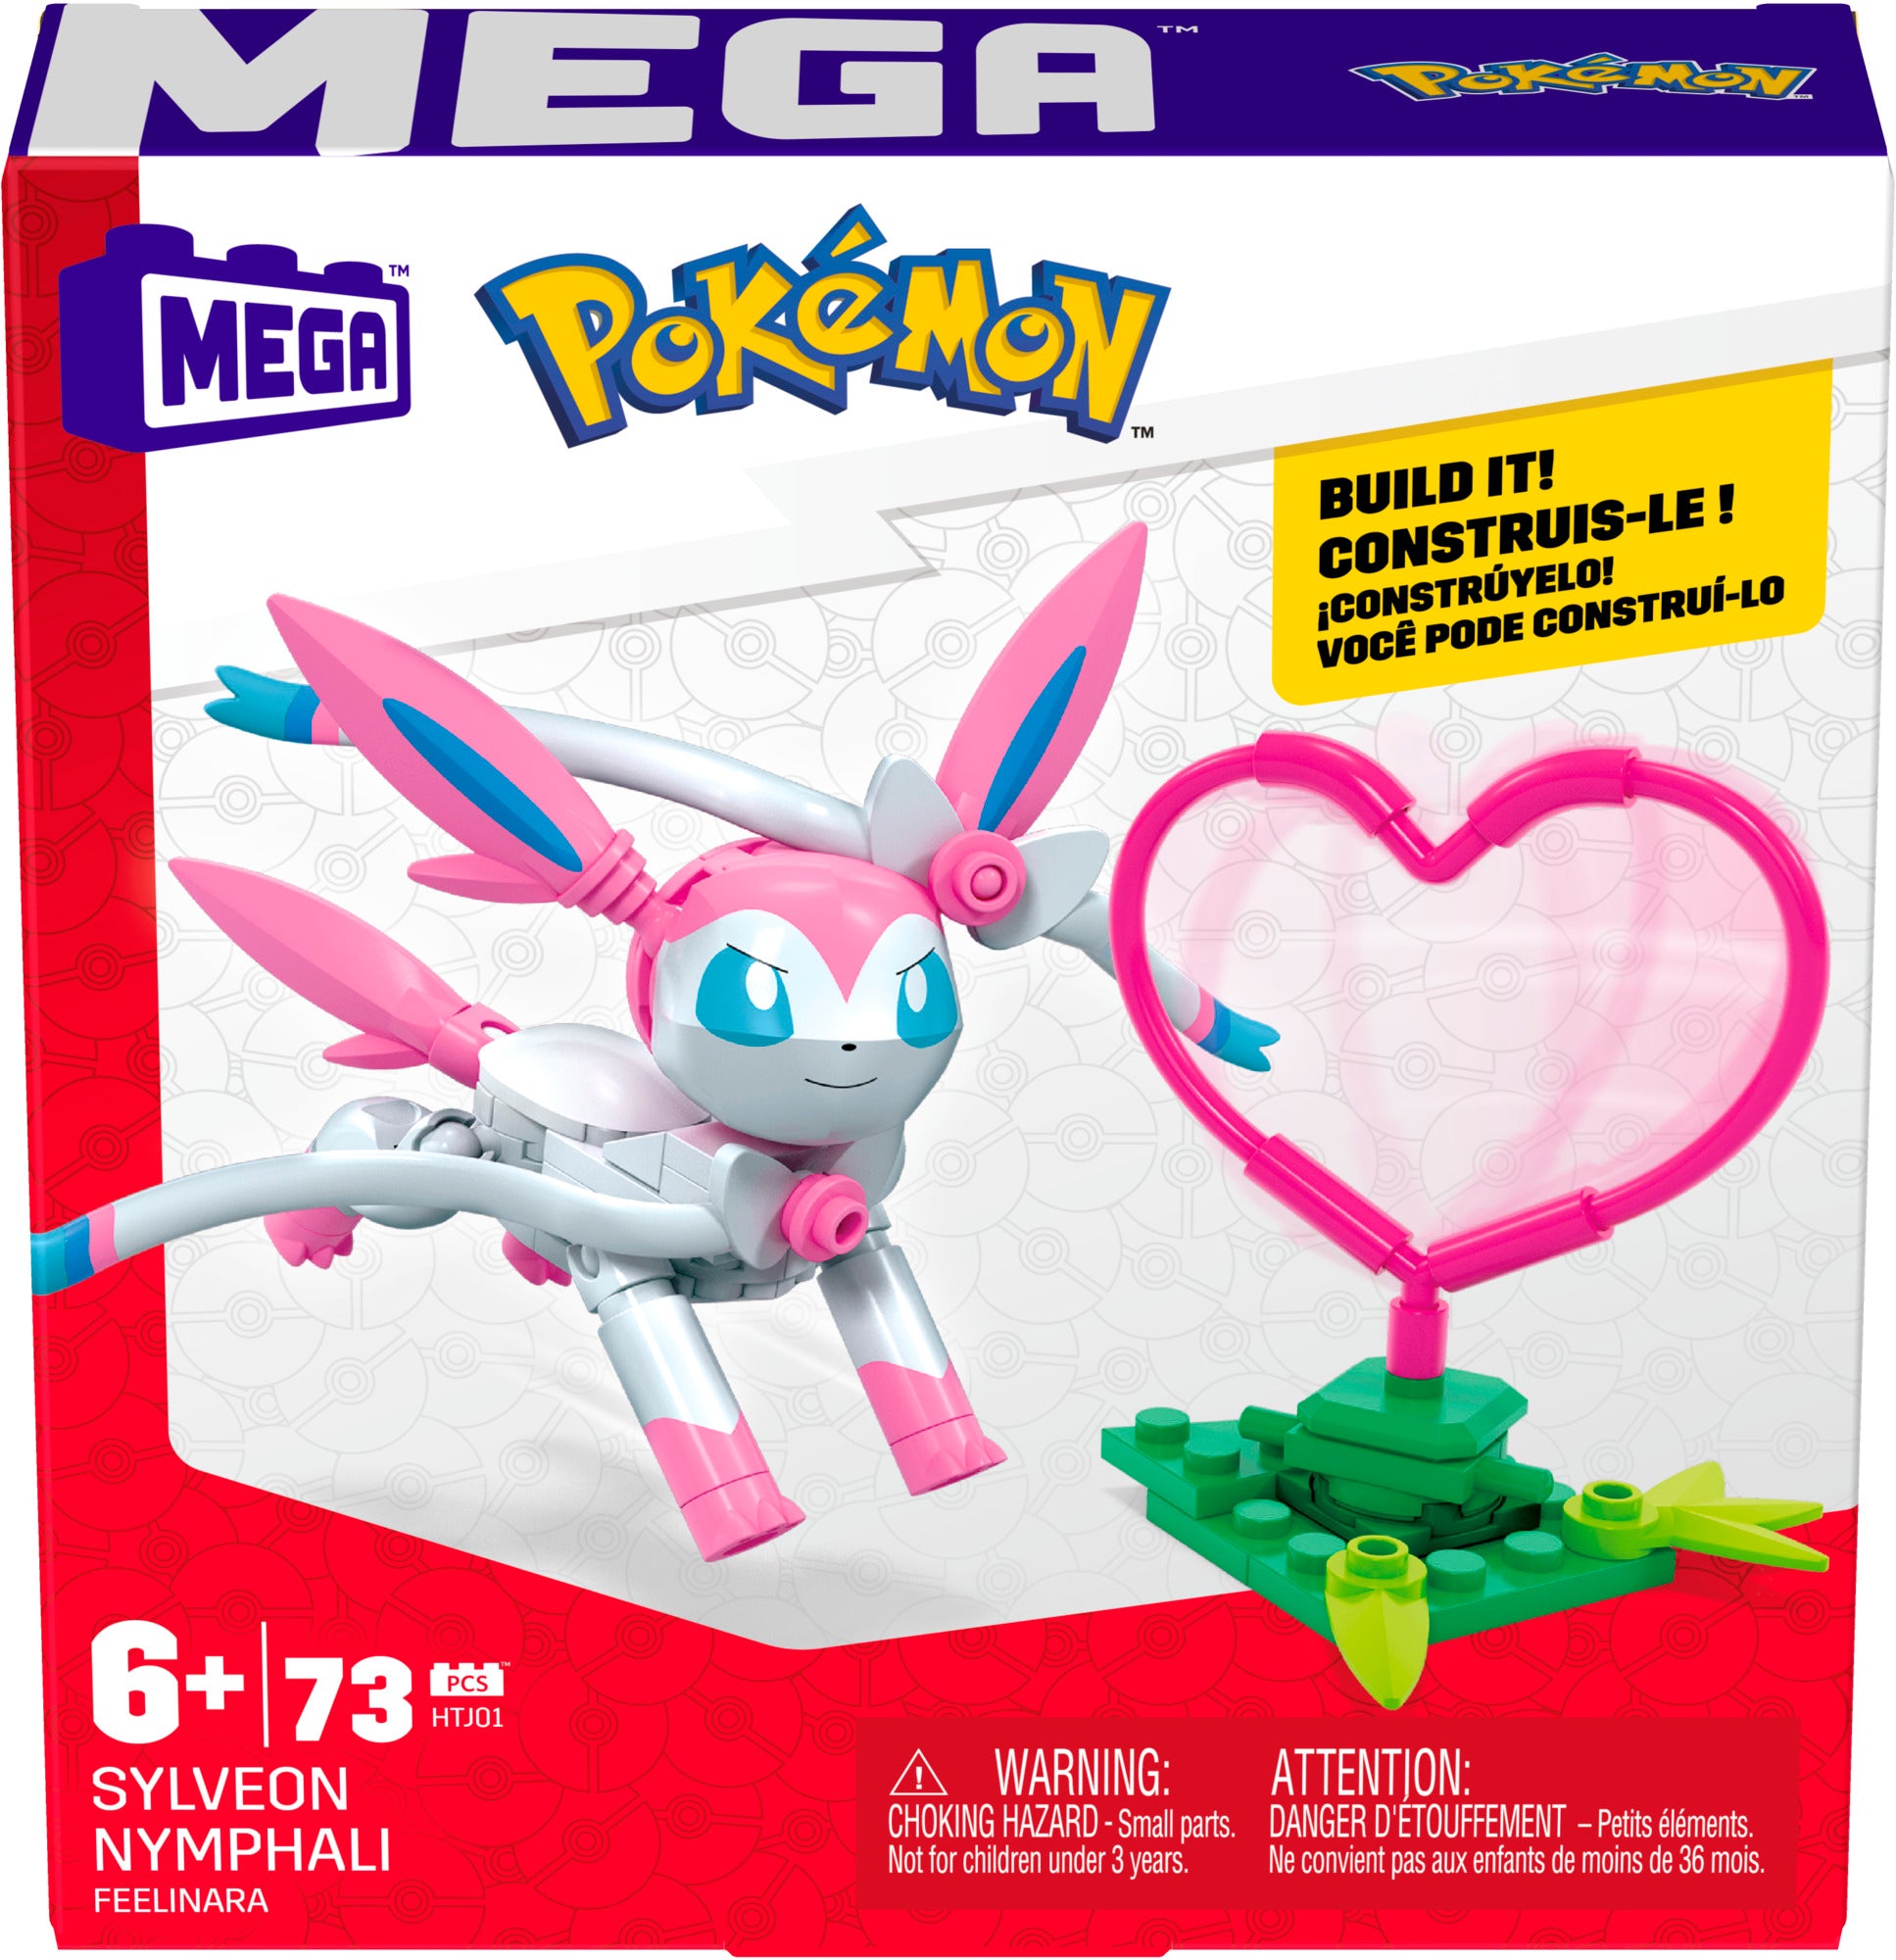 MEGA™ Construx Pokémon Power Packs Assortment